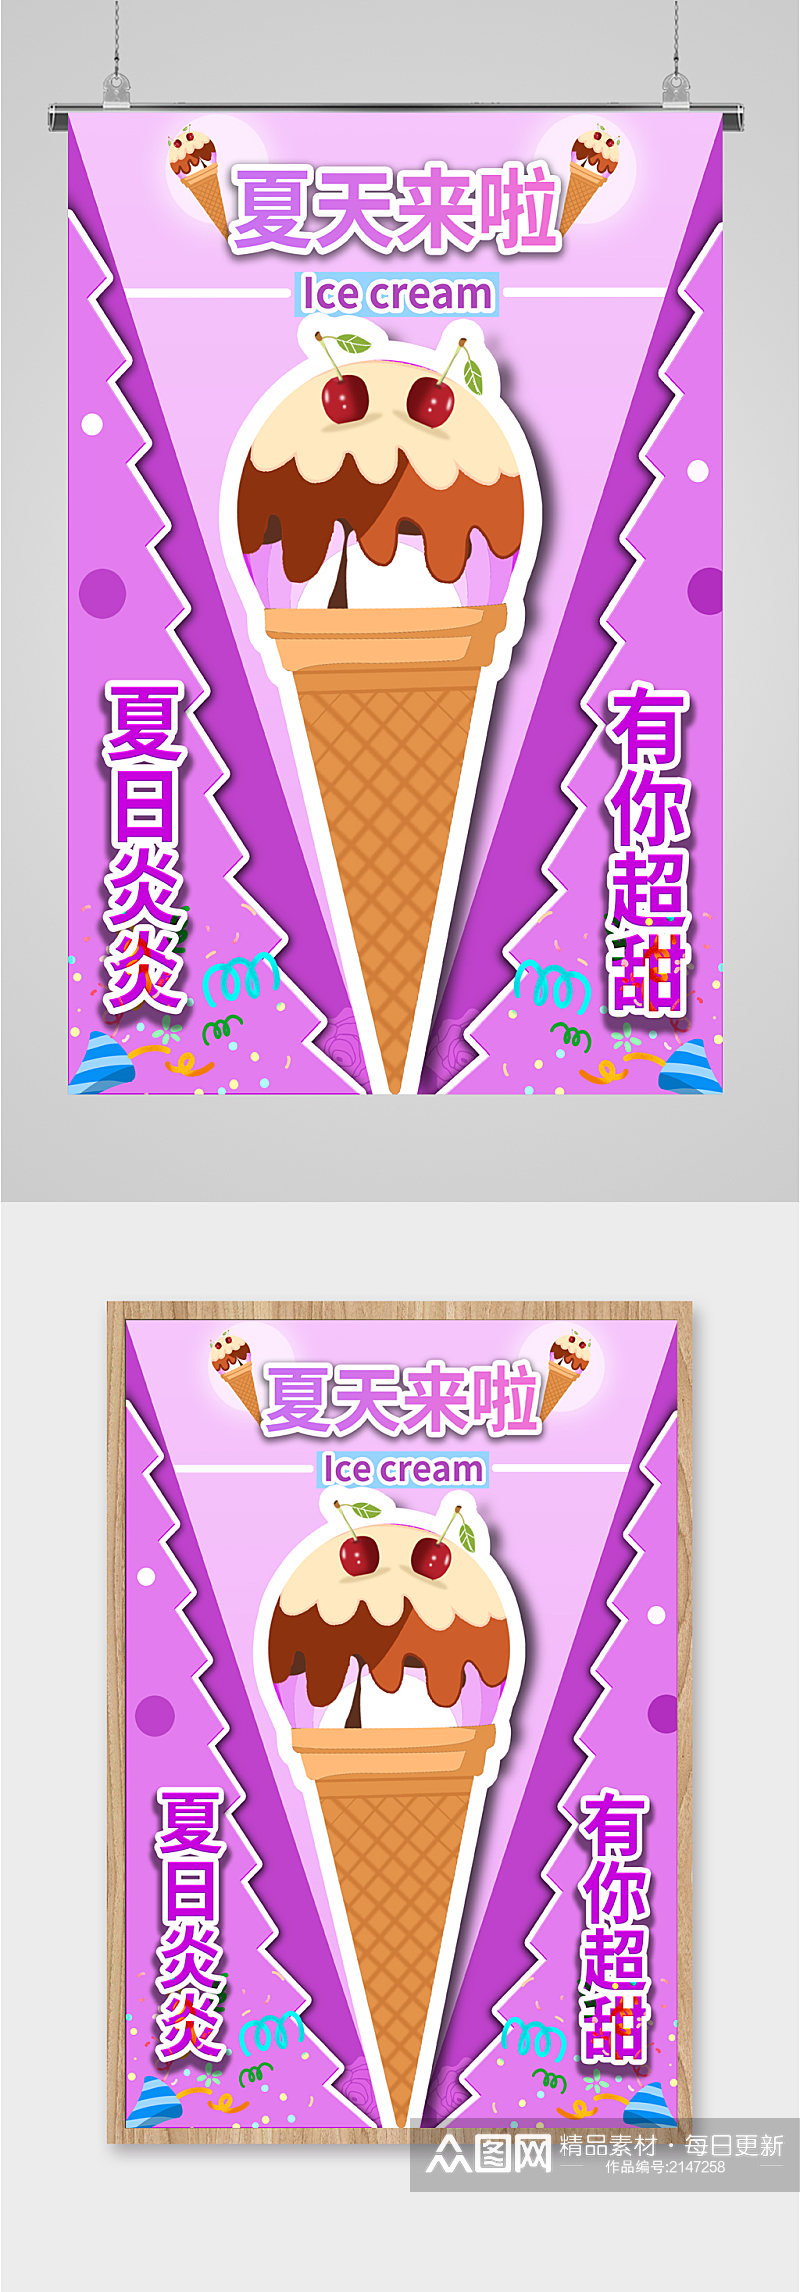 夏日冰淇淋冷饮海报素材